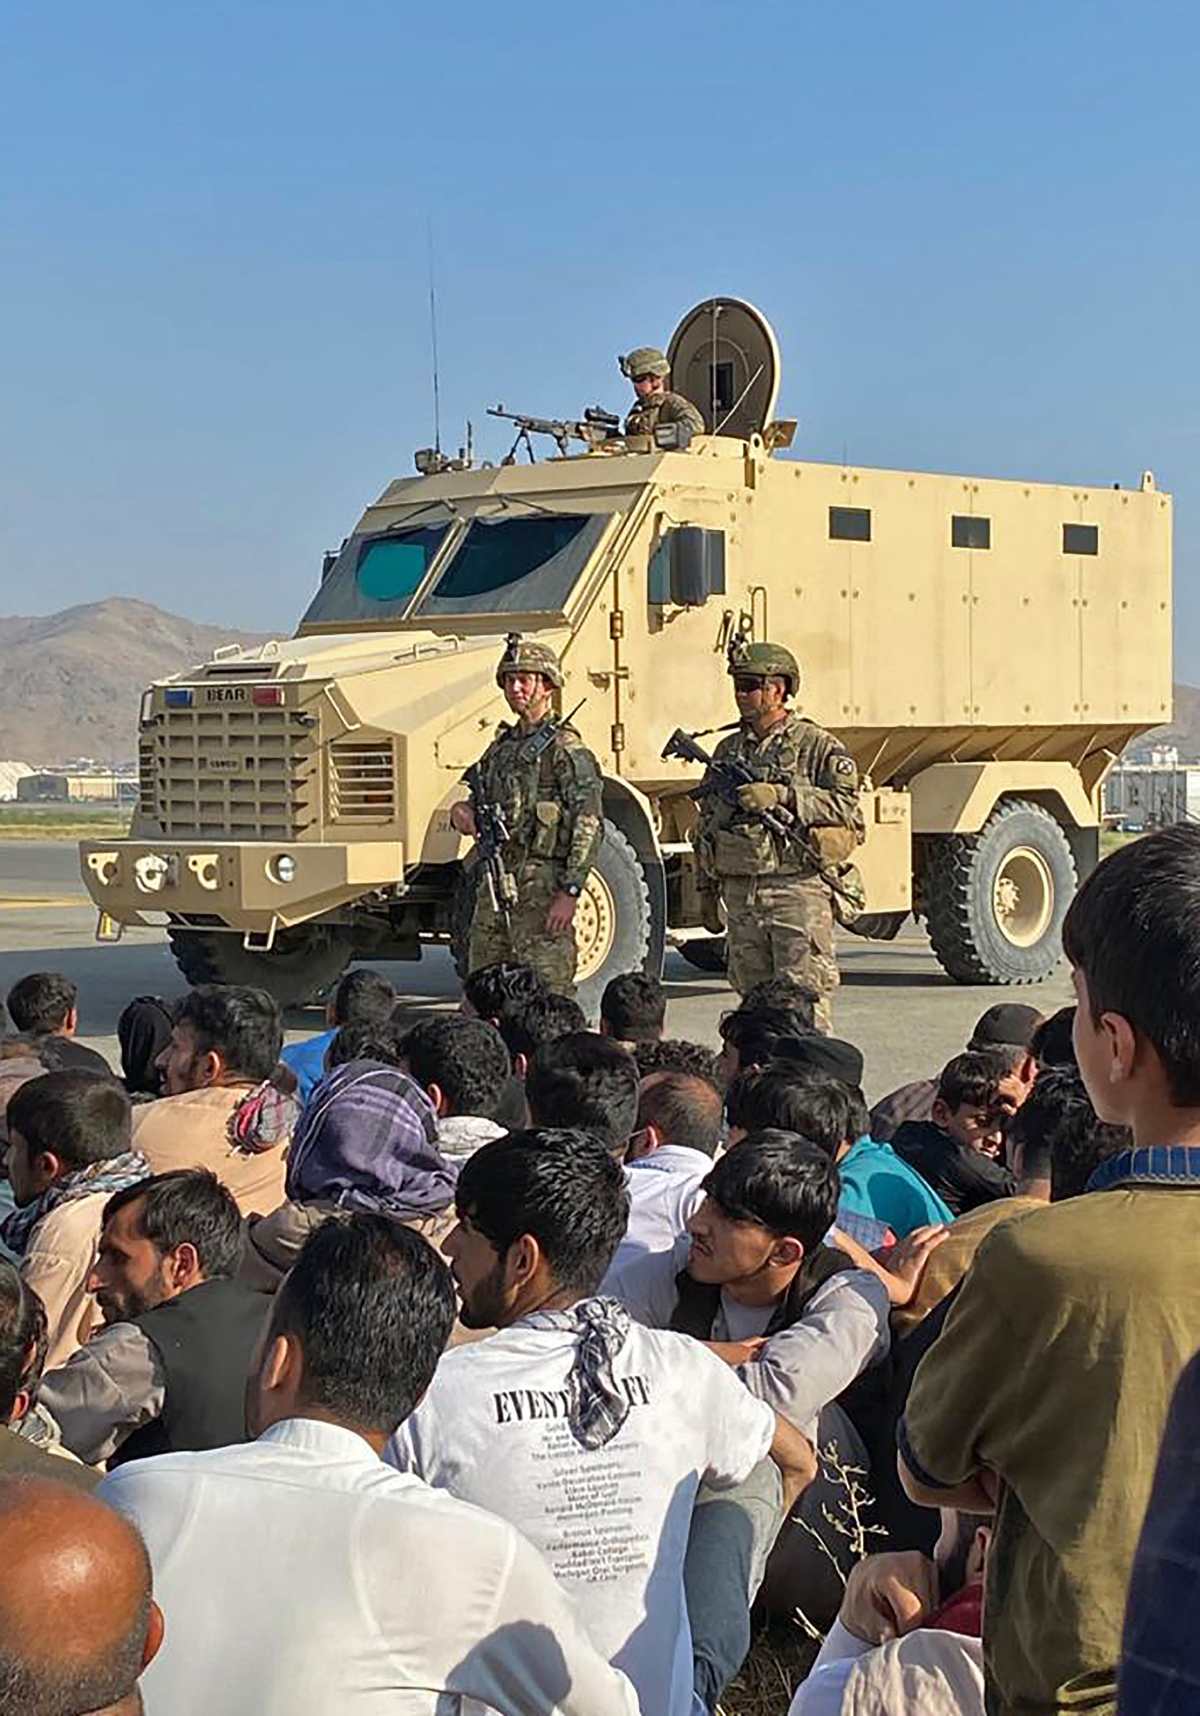 Vídeos: Miles de personas intentan huir de Kabul por temor a los talibanes